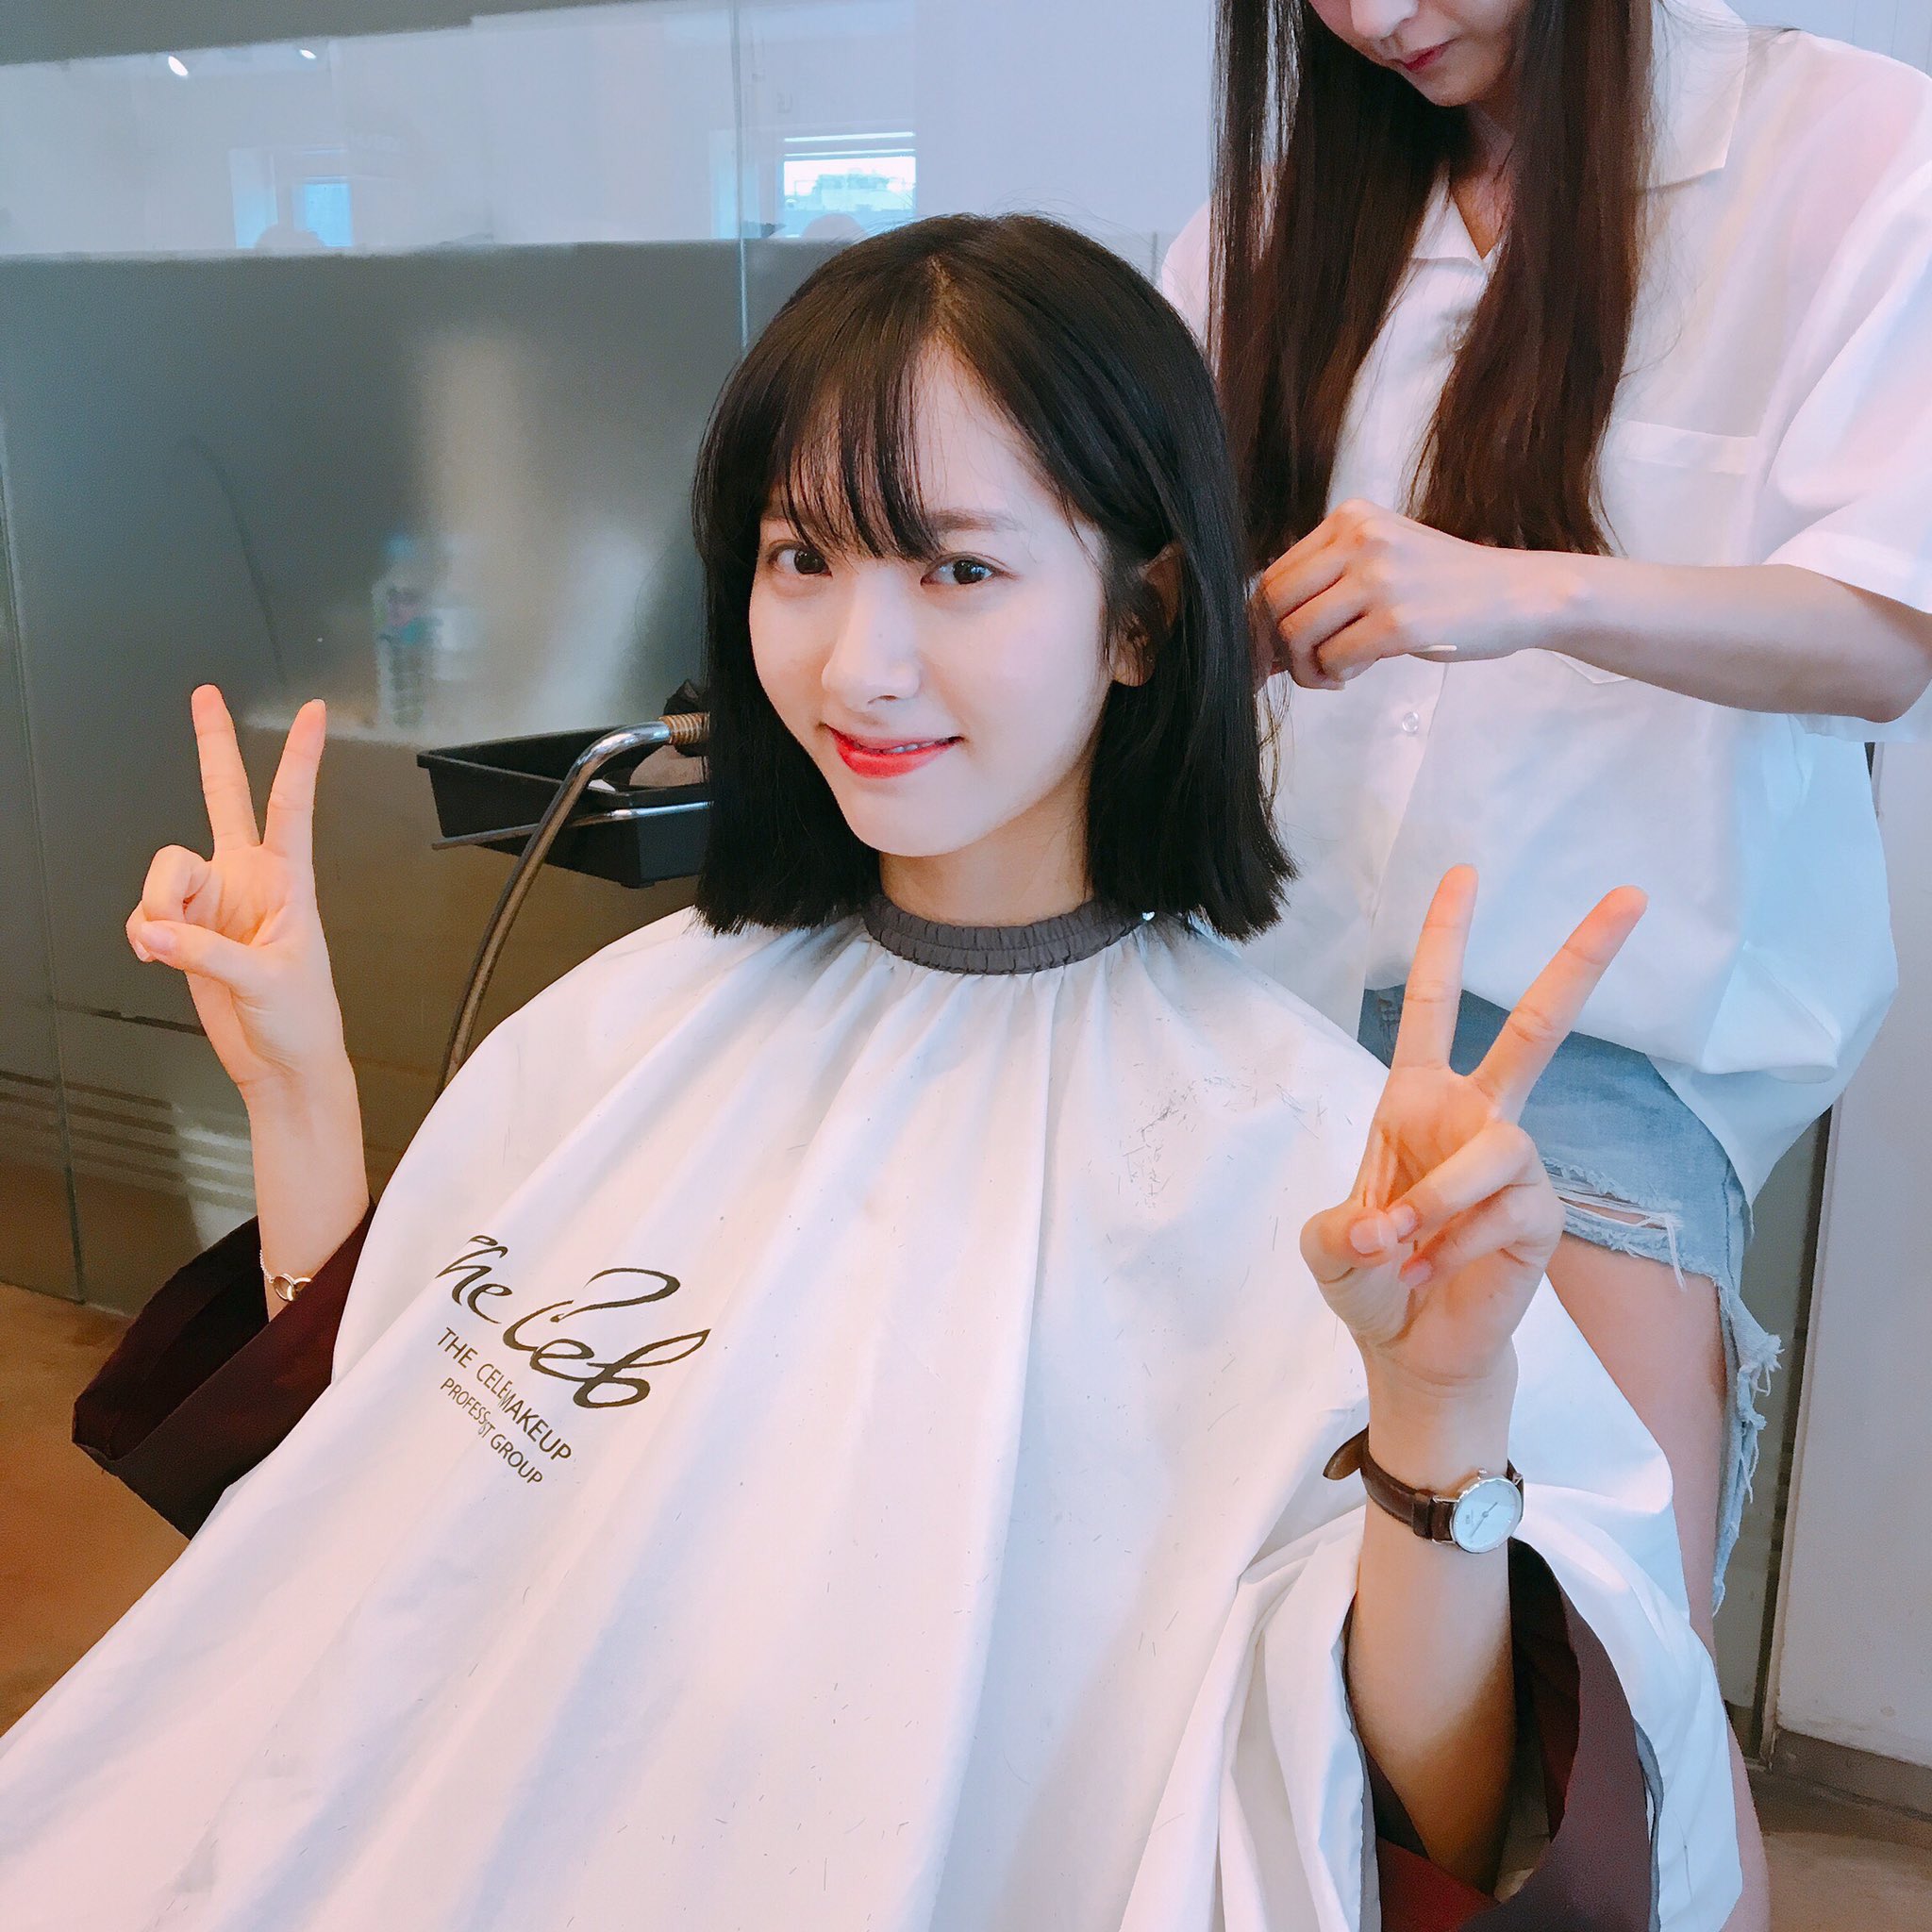 髪型がショート ボブのk Pop韓国女性アイドル選 おしゃれランキング 最新決定版22 Ranky ランキー 女子が気になるランキングまとめサイト